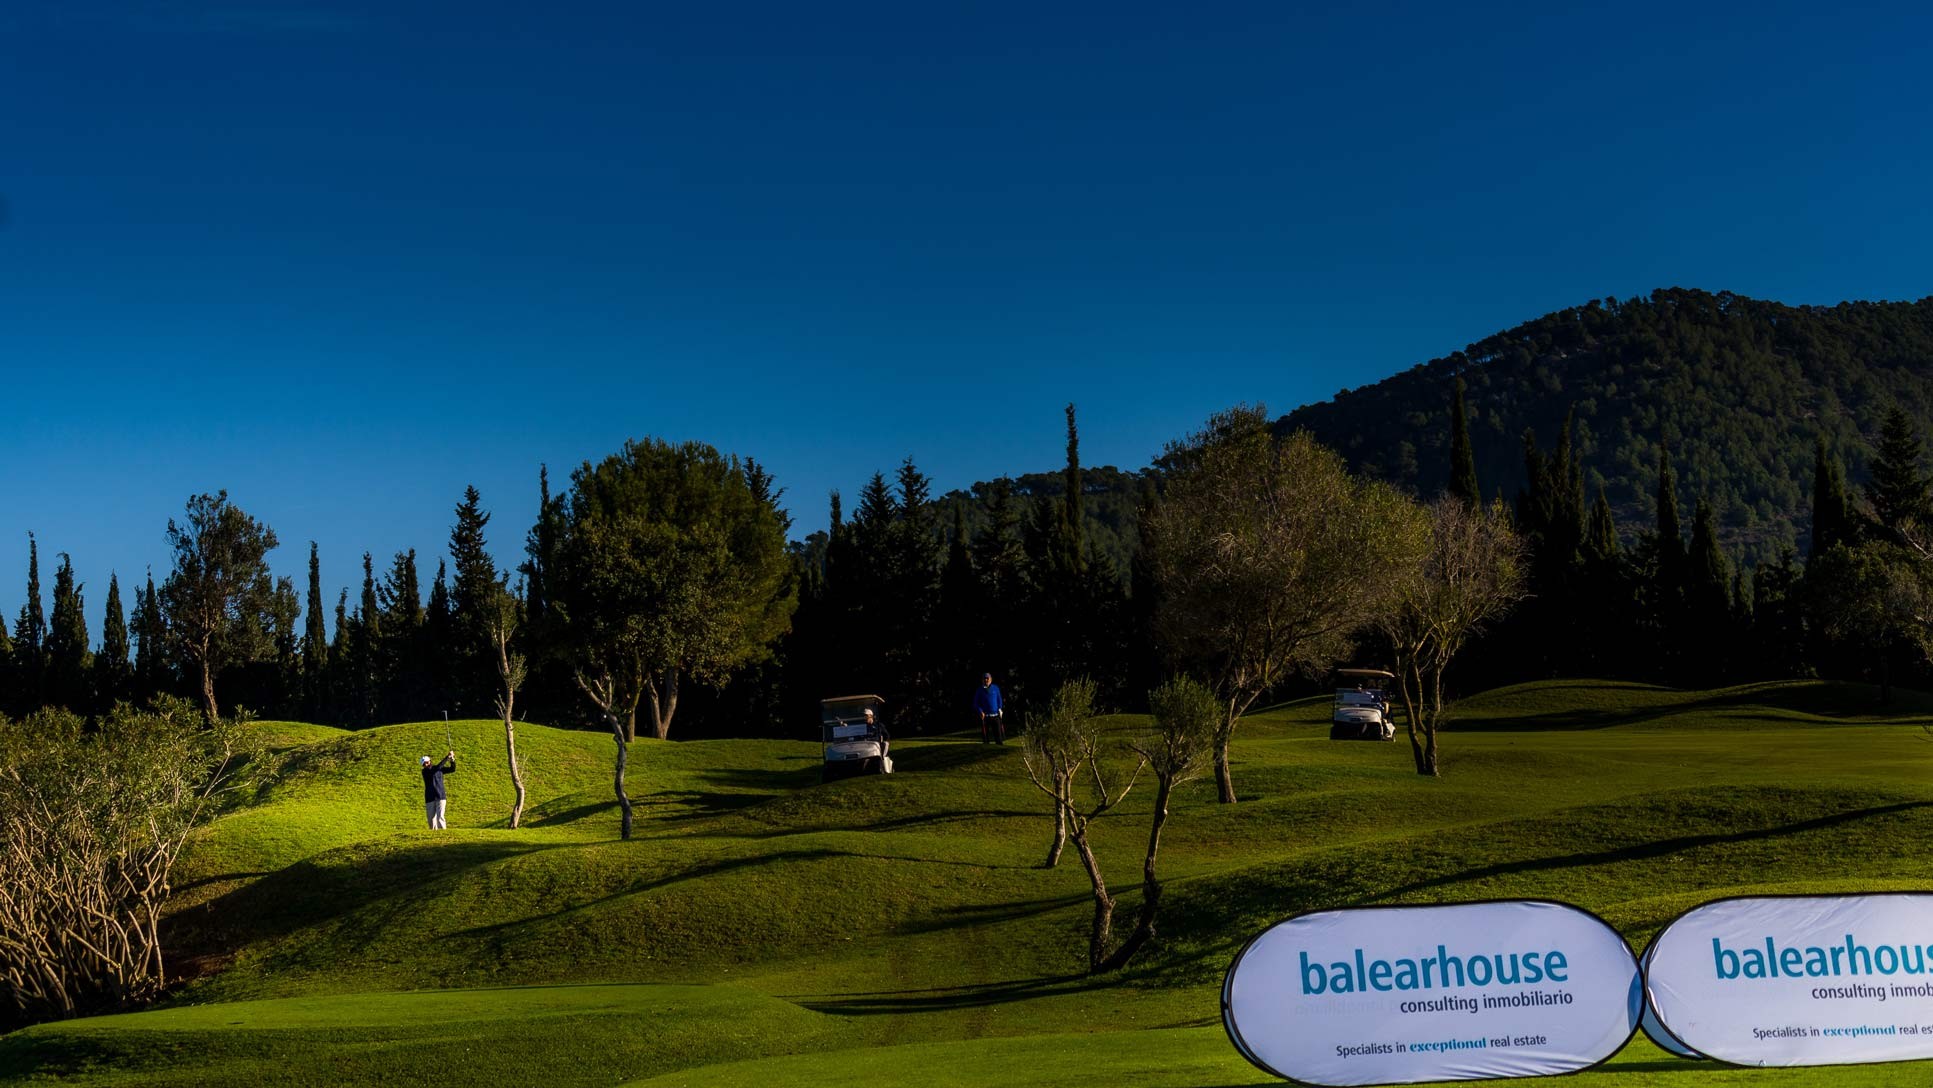 Balearhouse con la VI edición del Torneo de Golf Olazábal & Nadal Invitational by Pula Golf Resort donde deporte y gastronomía se unen con fines benéficos.